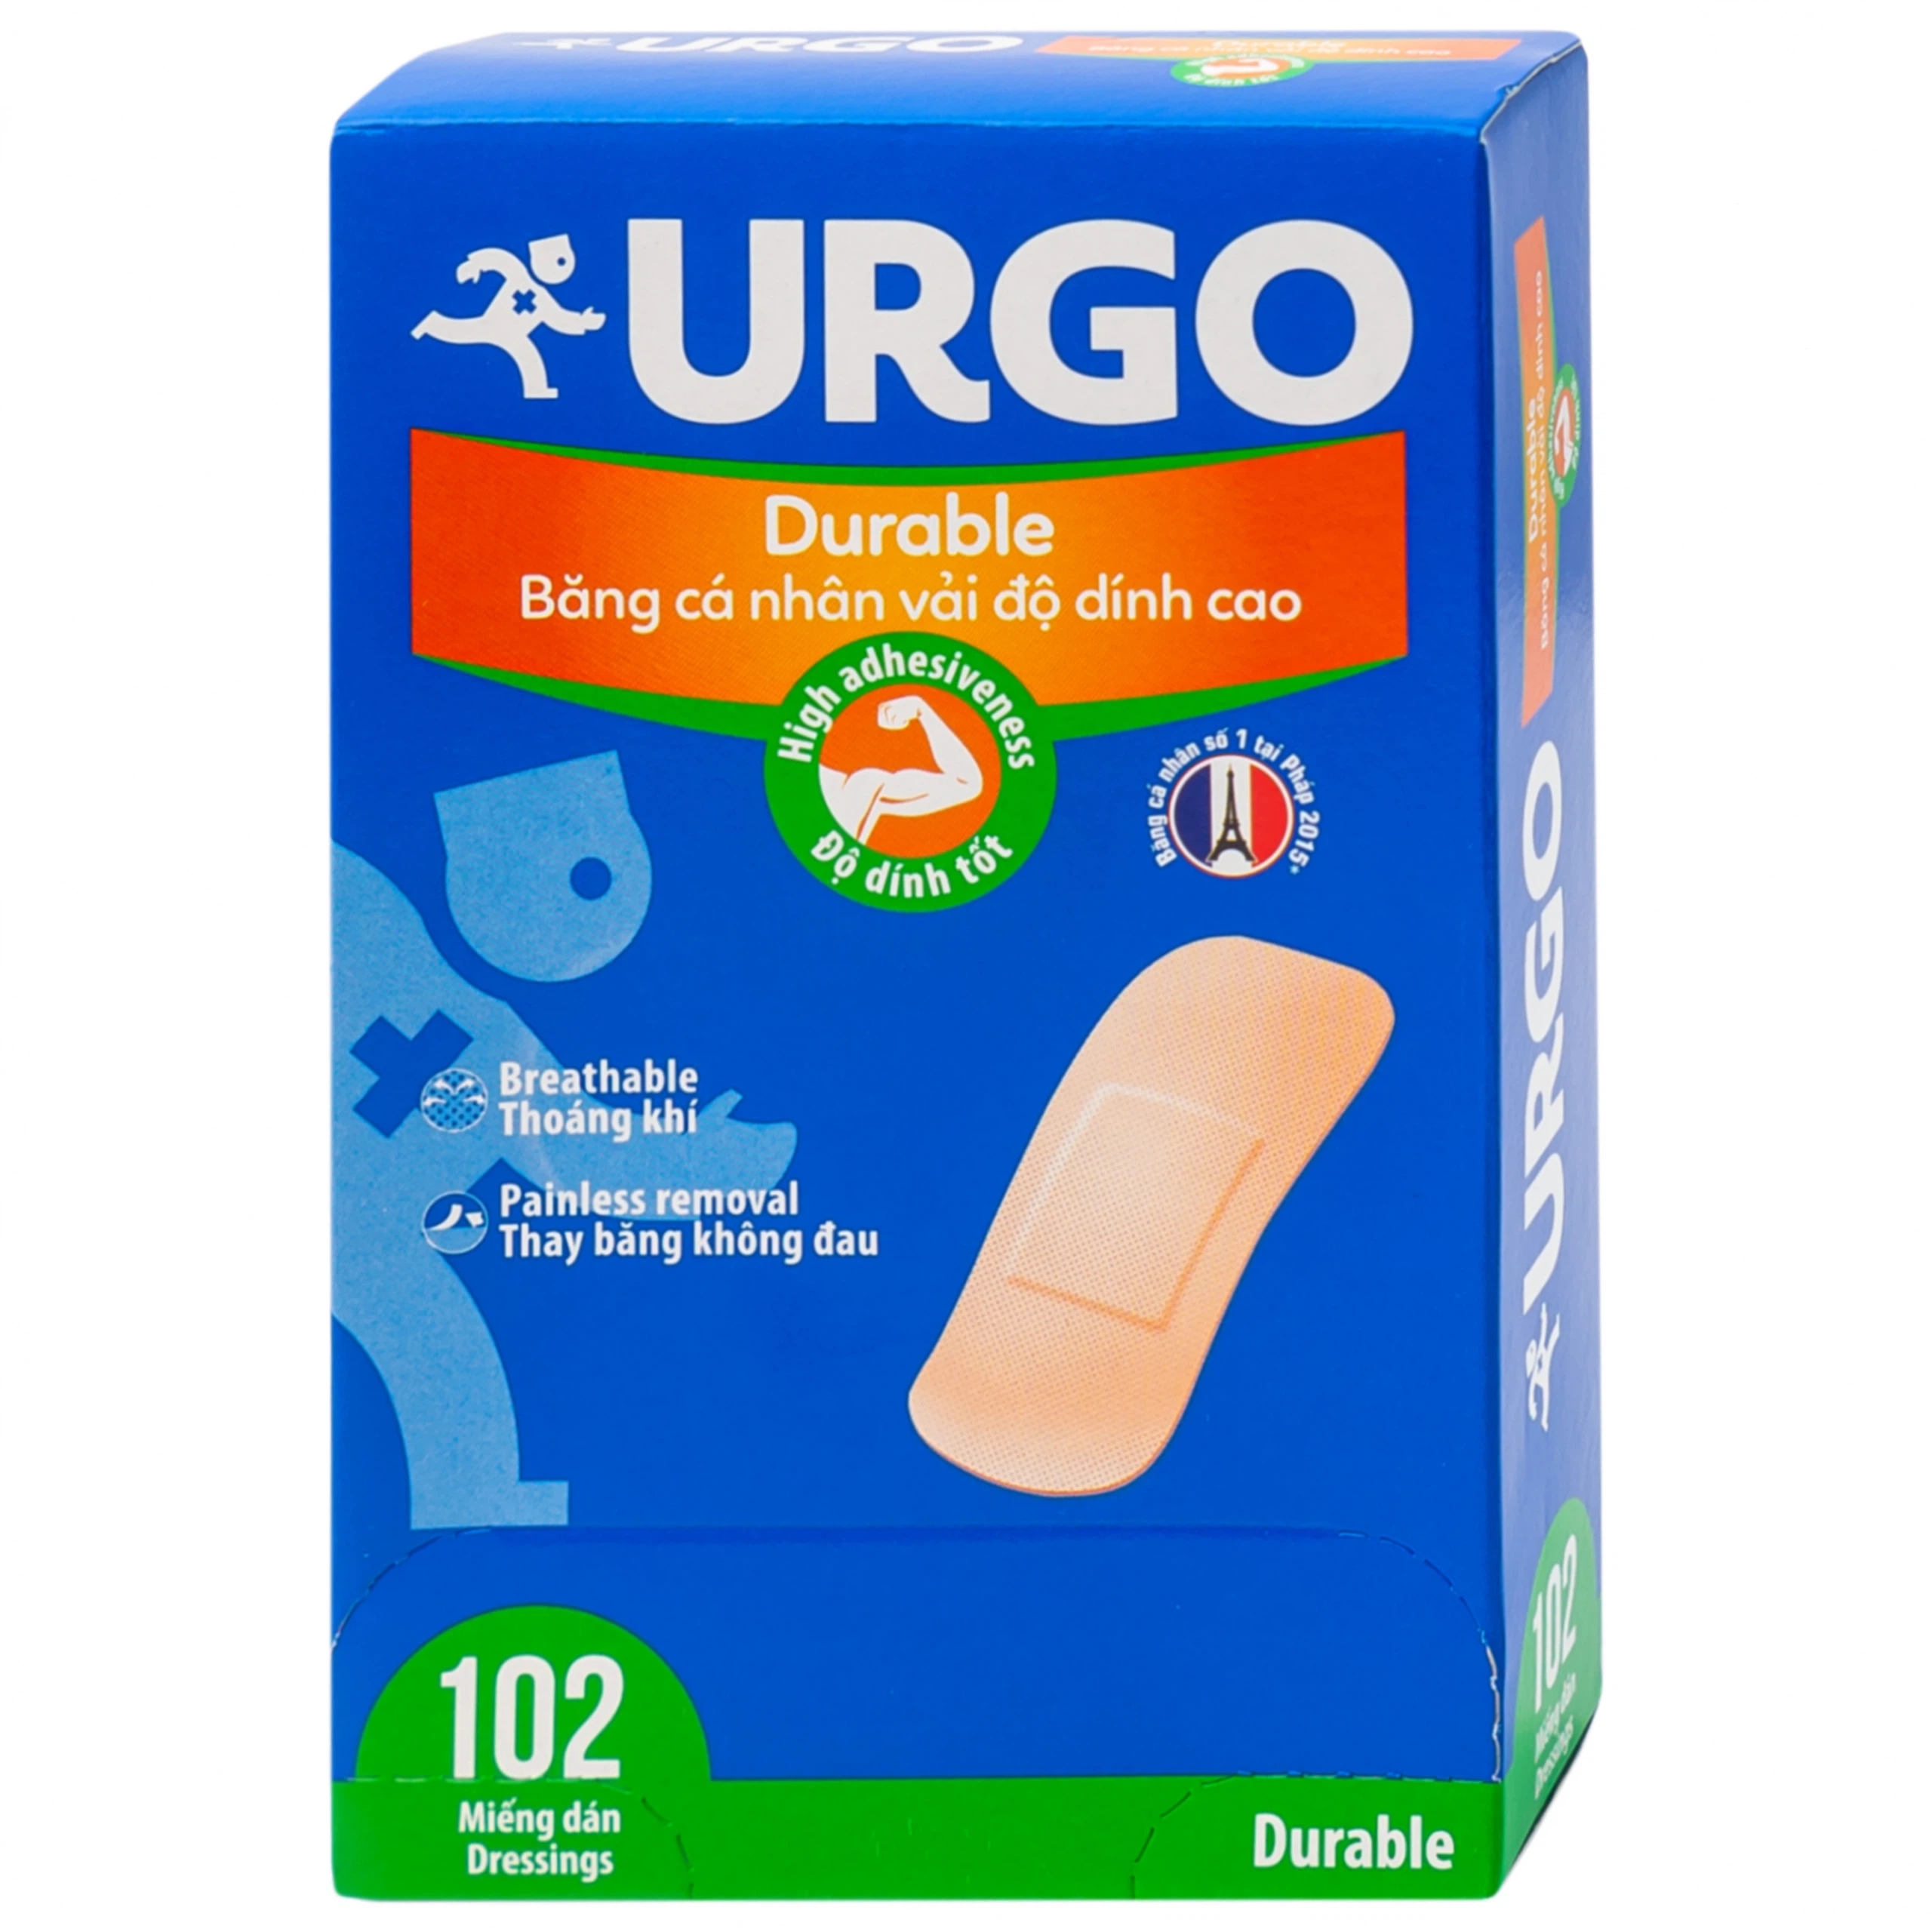 Băng cá nhân vải độ dính cao Urgo Durable size 2cm x 6cm bảo vệ các vết thương nhỏ, vết trầy xước, rách da (102 miếng)